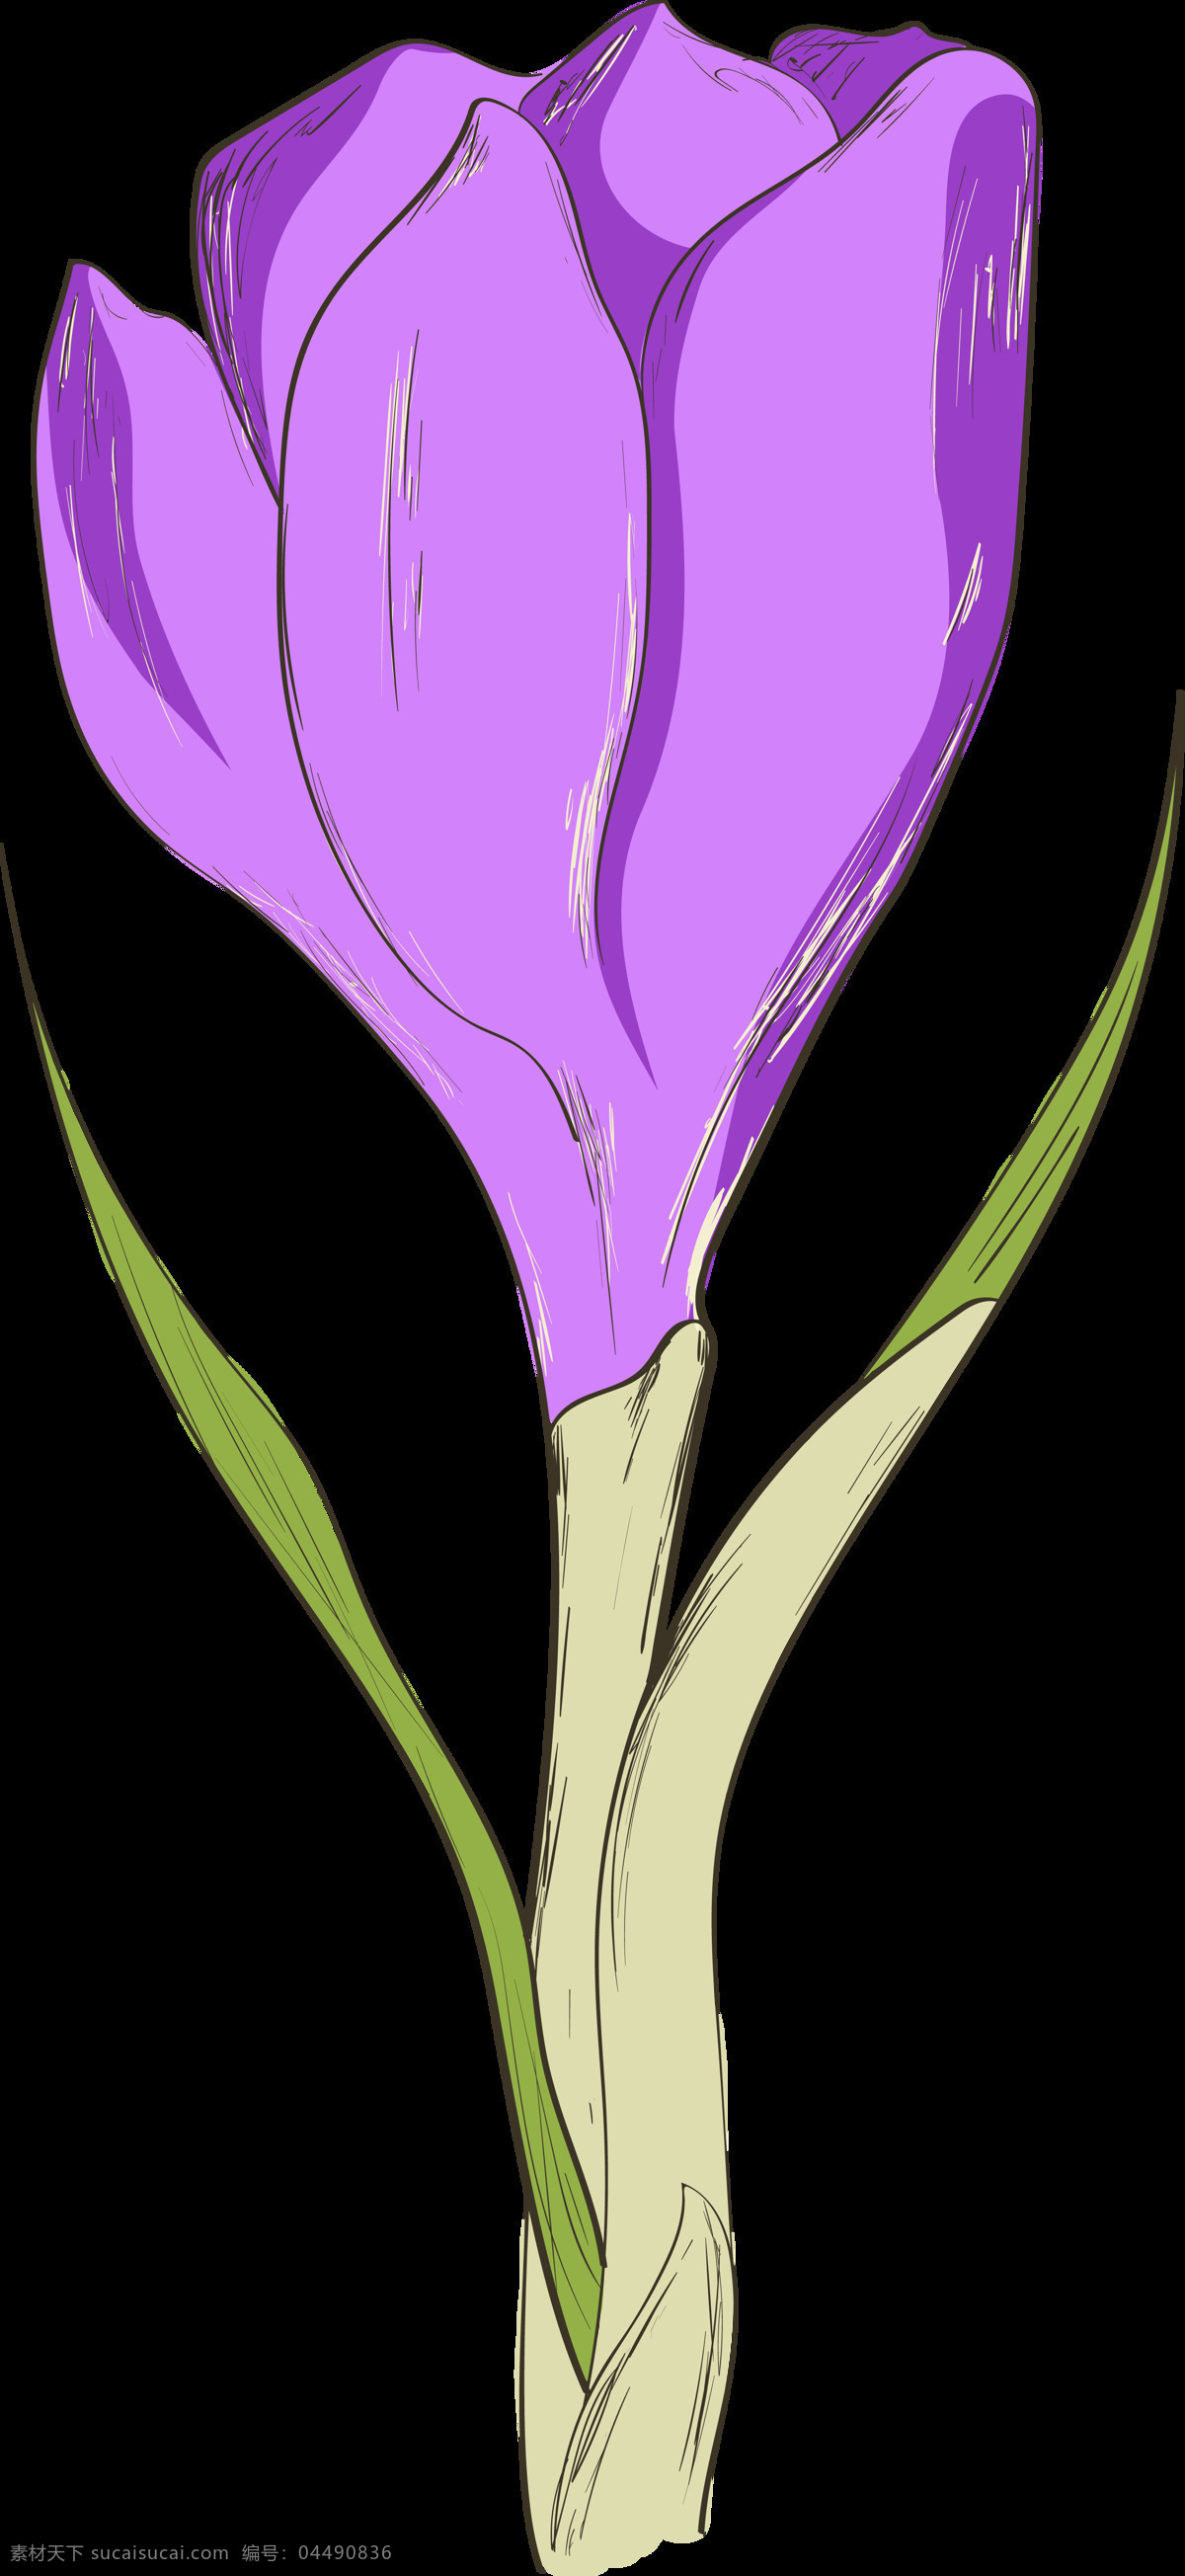 手绘 朵 紫色 花苞 透明 花朵 绿叶 平面素材 设计素材 矢量素材 水彩 植物